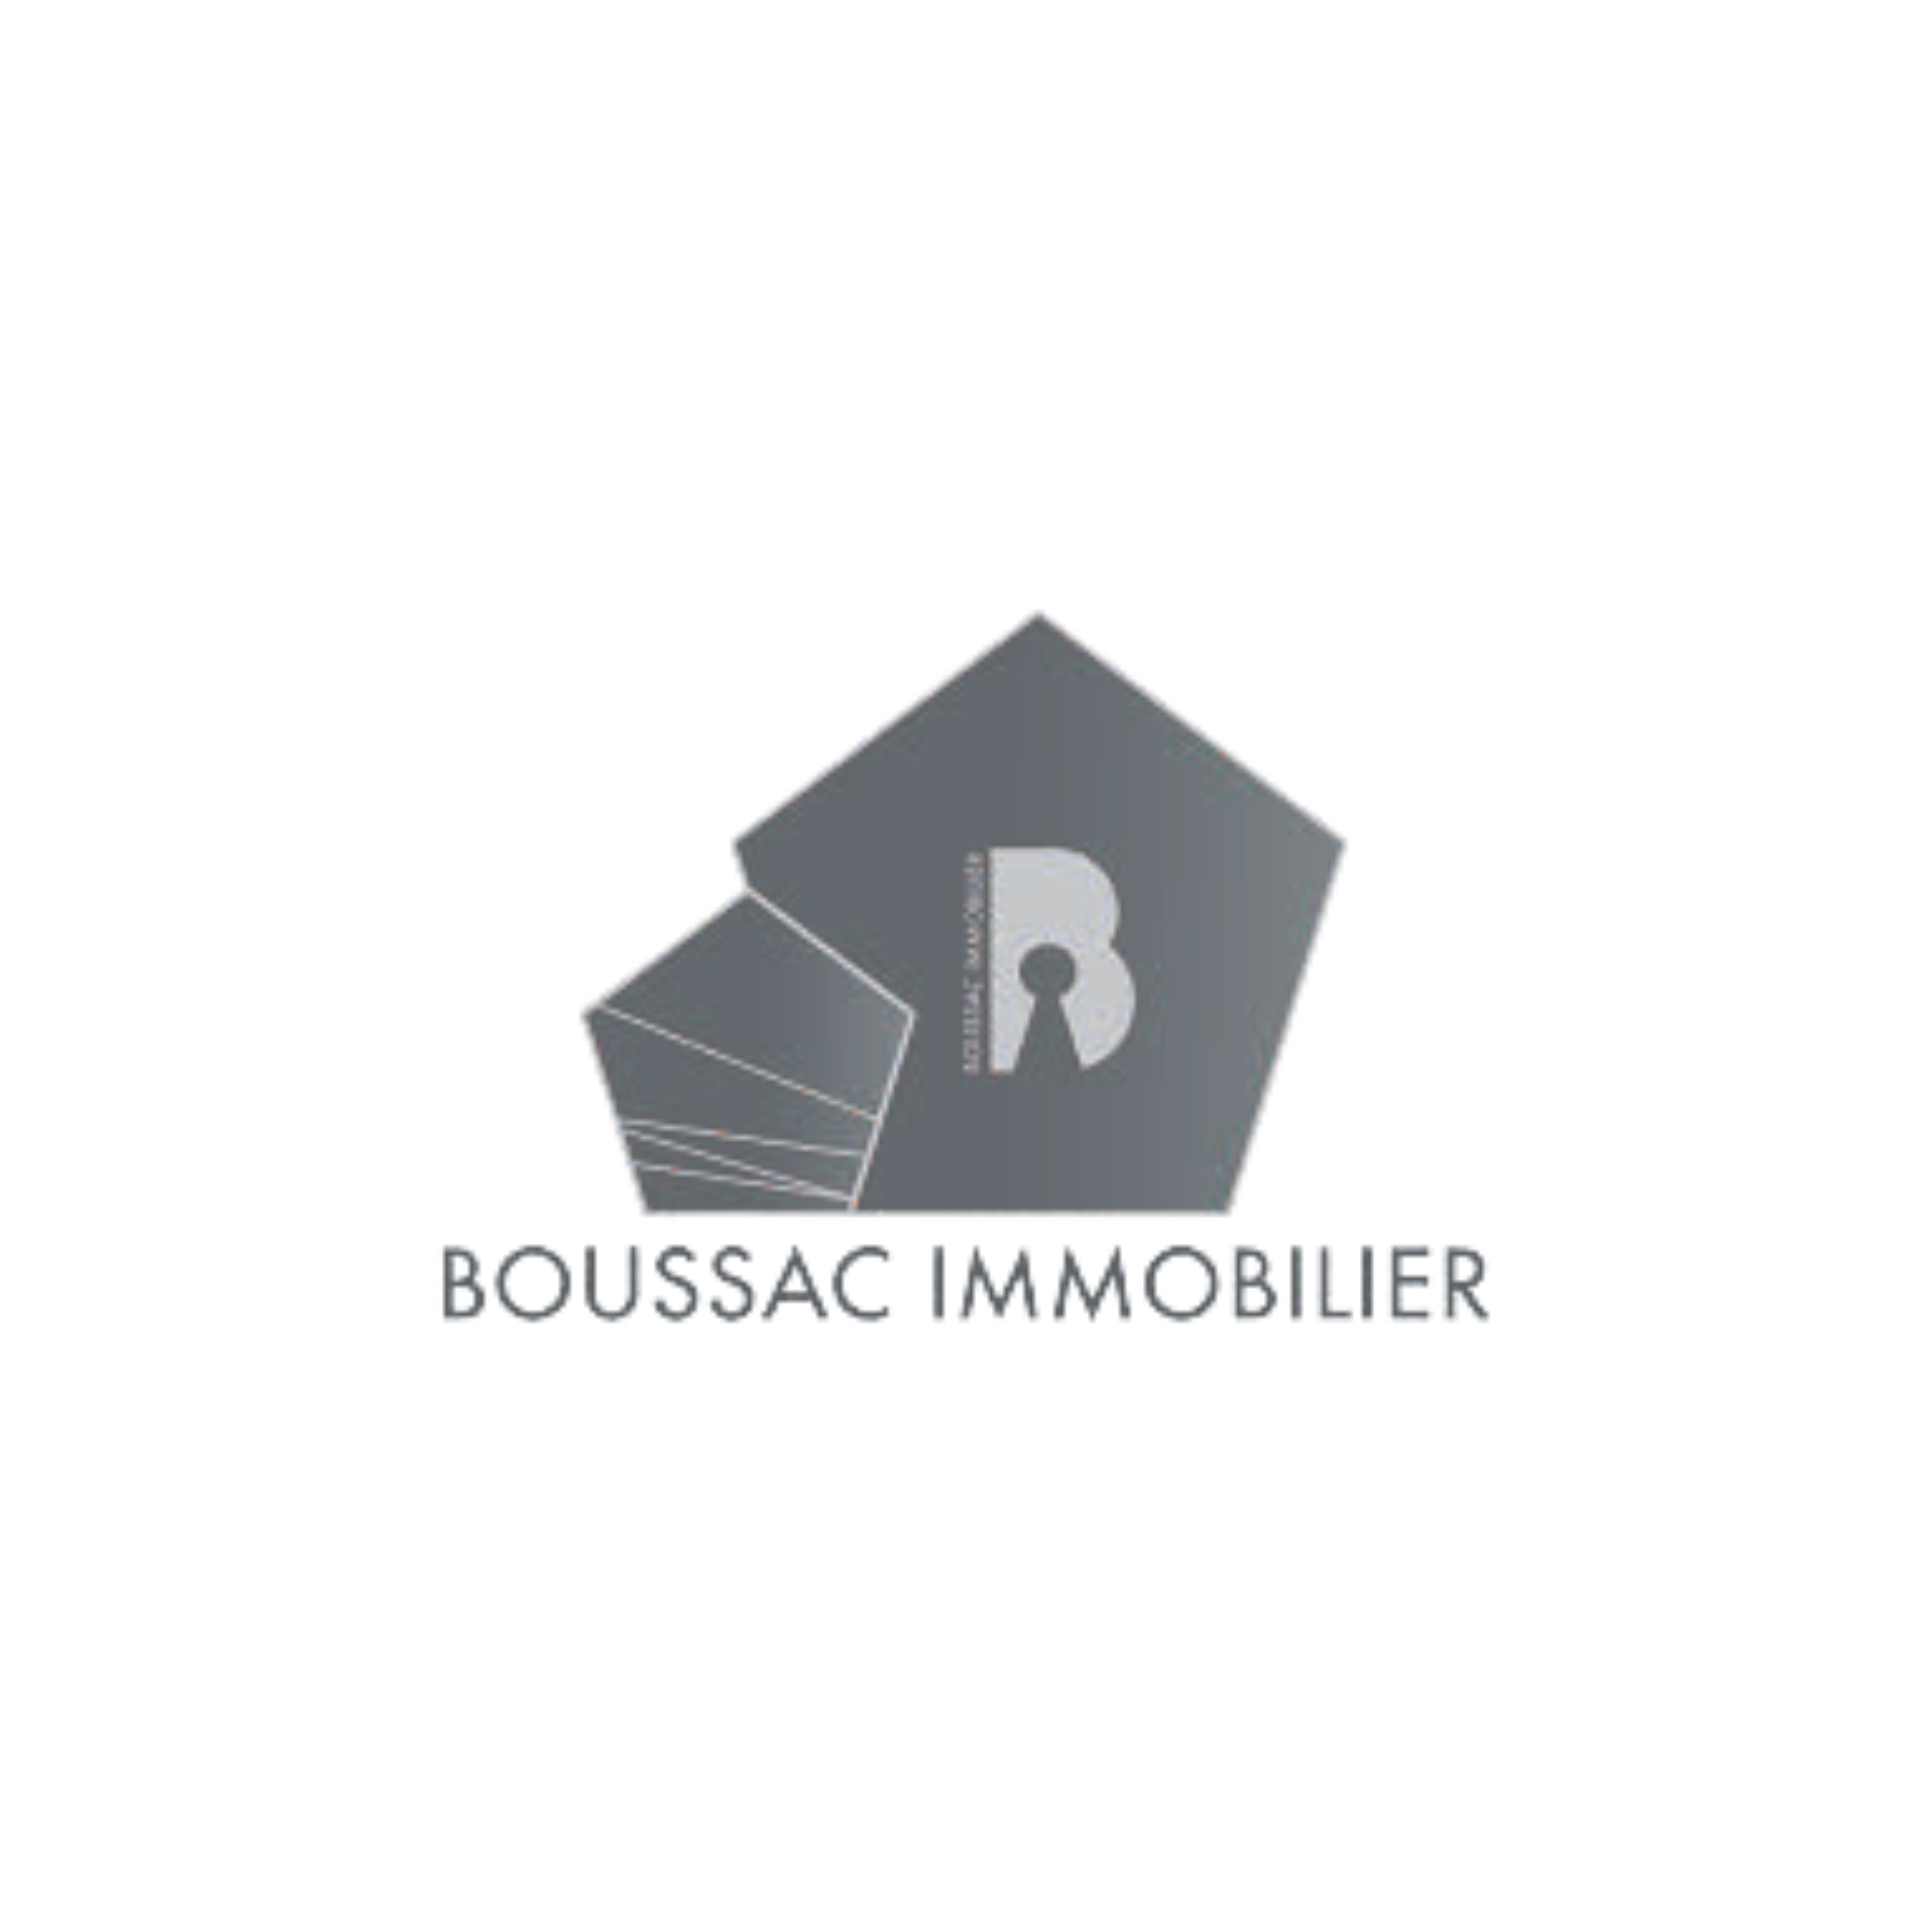 Un client du bureau habtalan en creuse est l'agence immobilier Boussac Immobilier